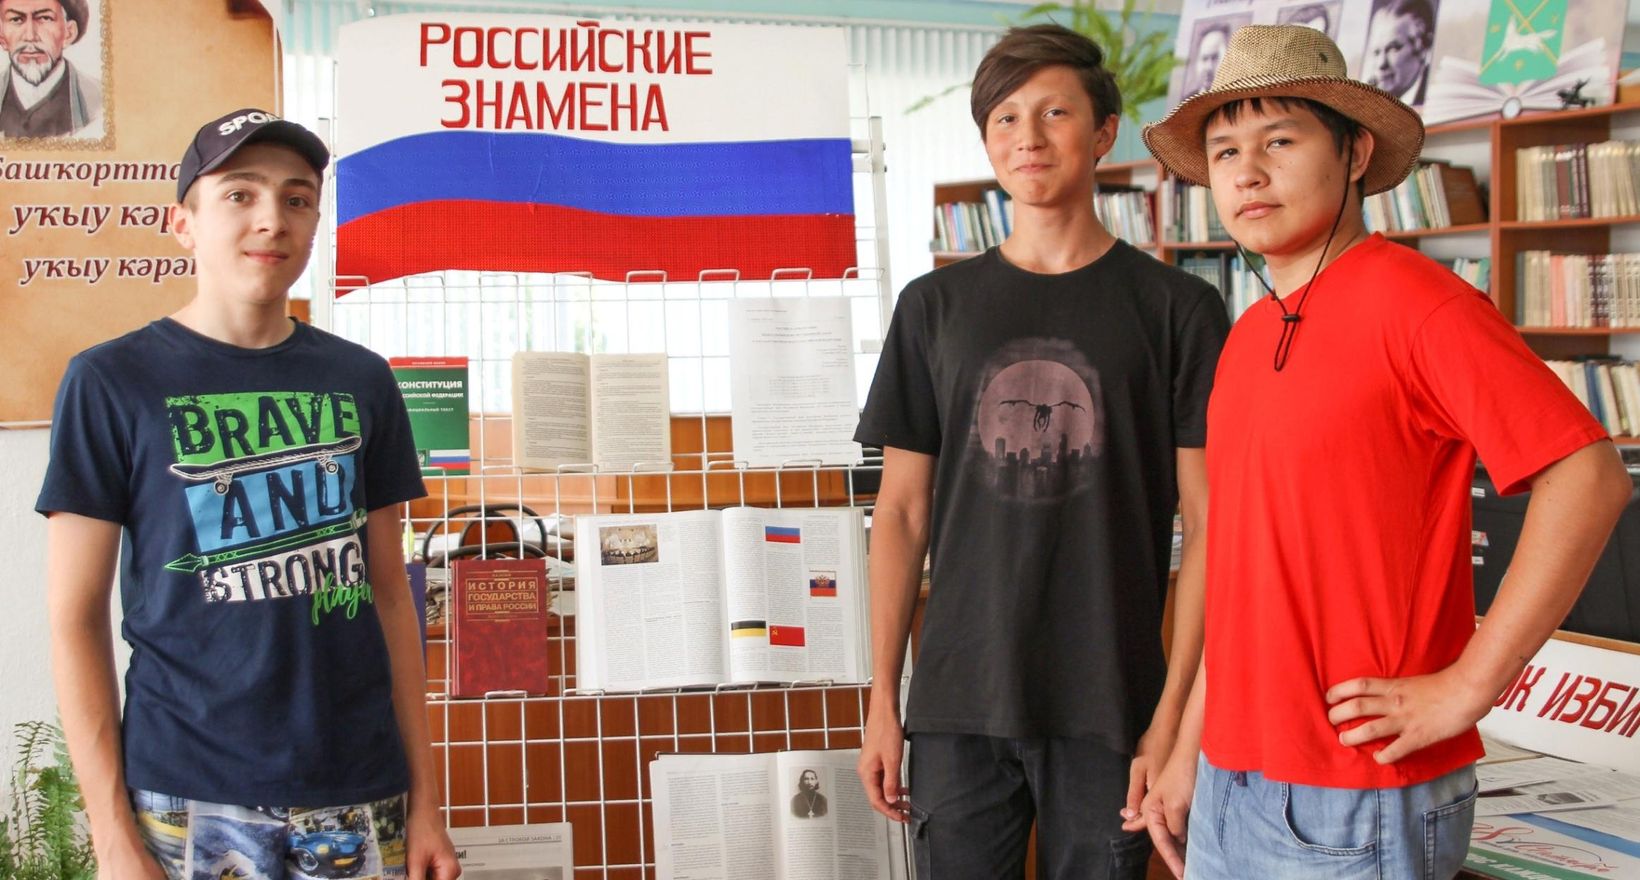 «Российский флаг – державы символ!»